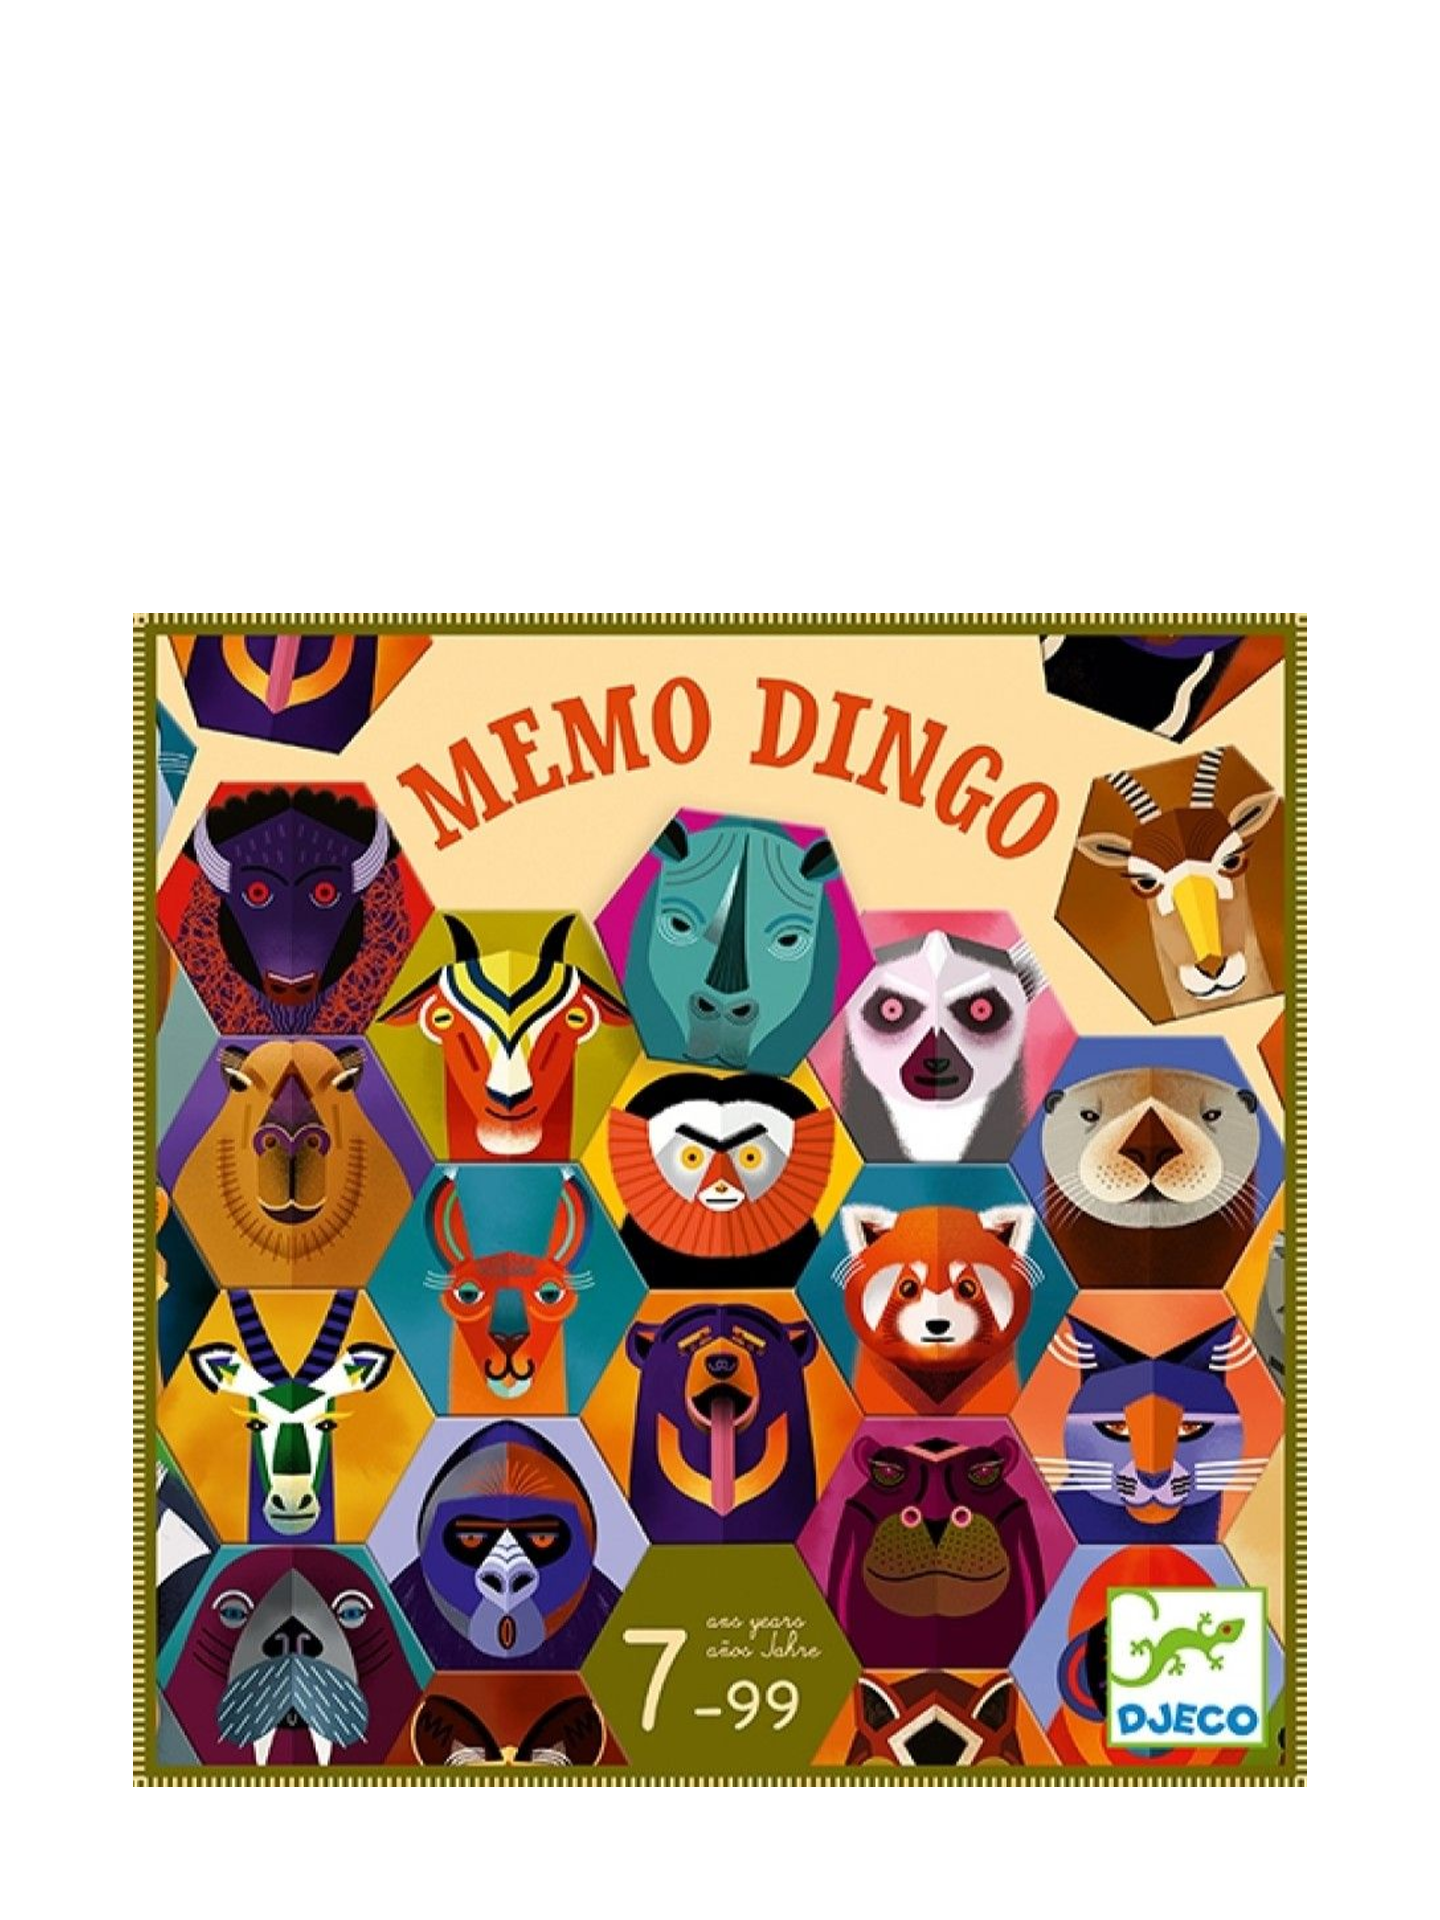 Dingo memory game